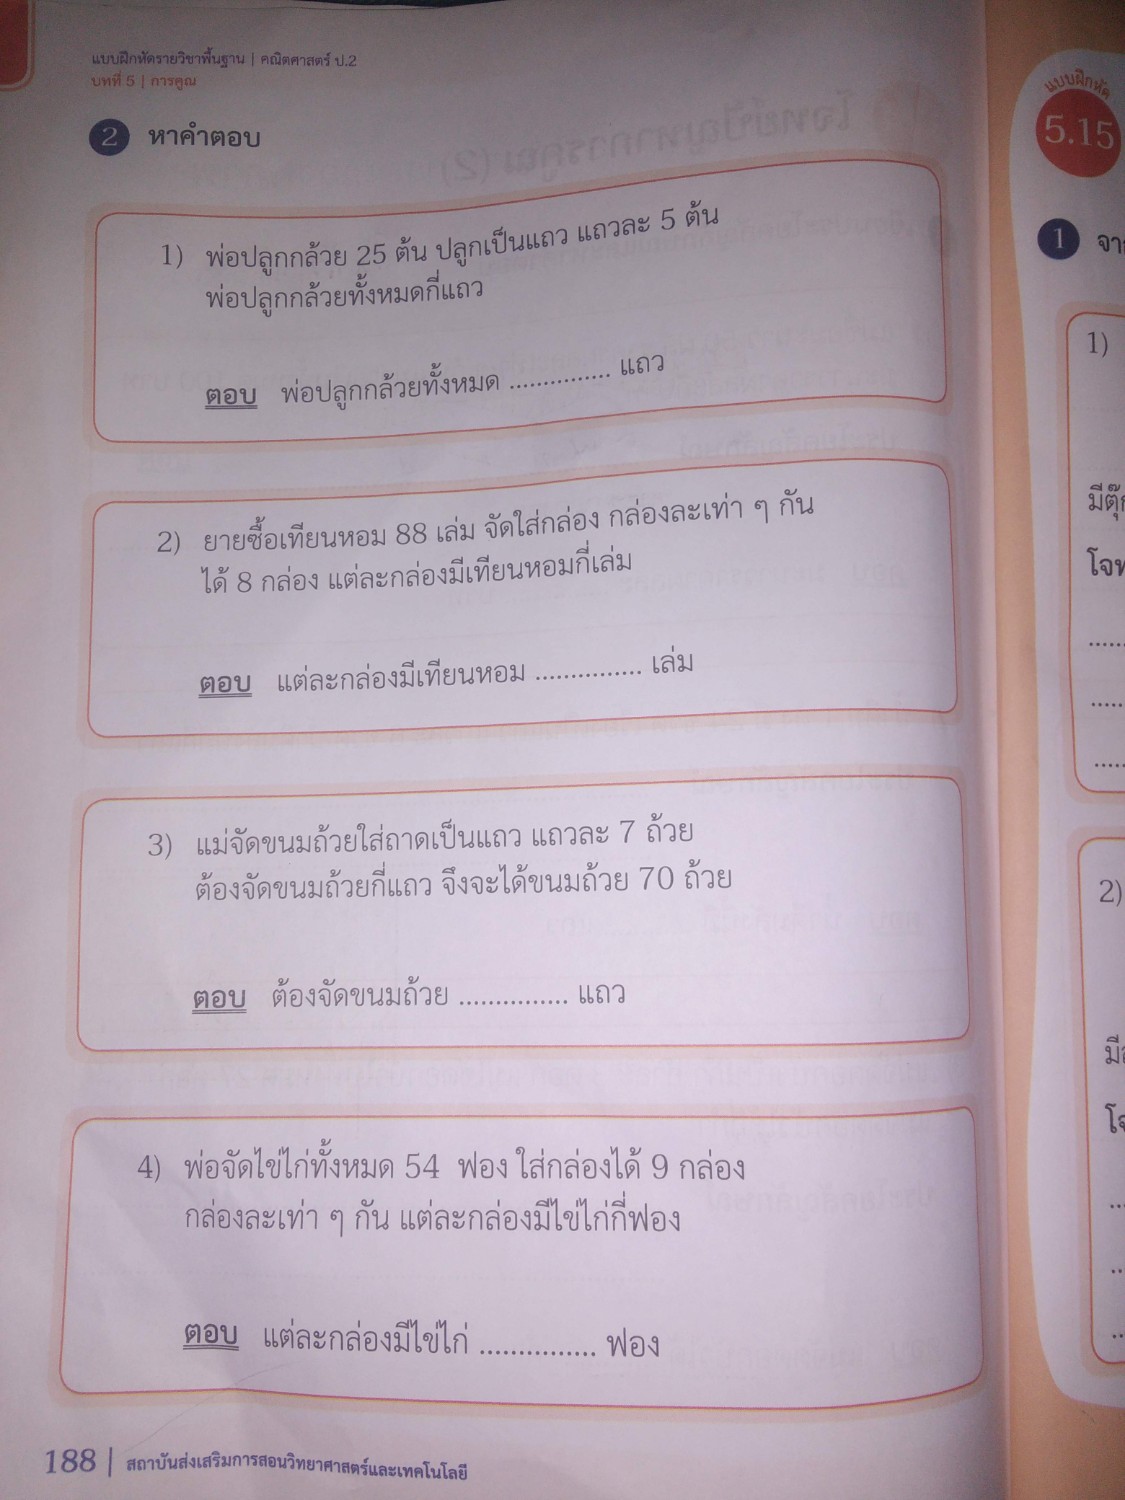 สุดยอดโจทย์คณิตศาสตร์ ป.2 ของเมืองไทย ต่อไปเด็กไทยต้องเป็นอัฉริยะแน่นอน -  Pantip